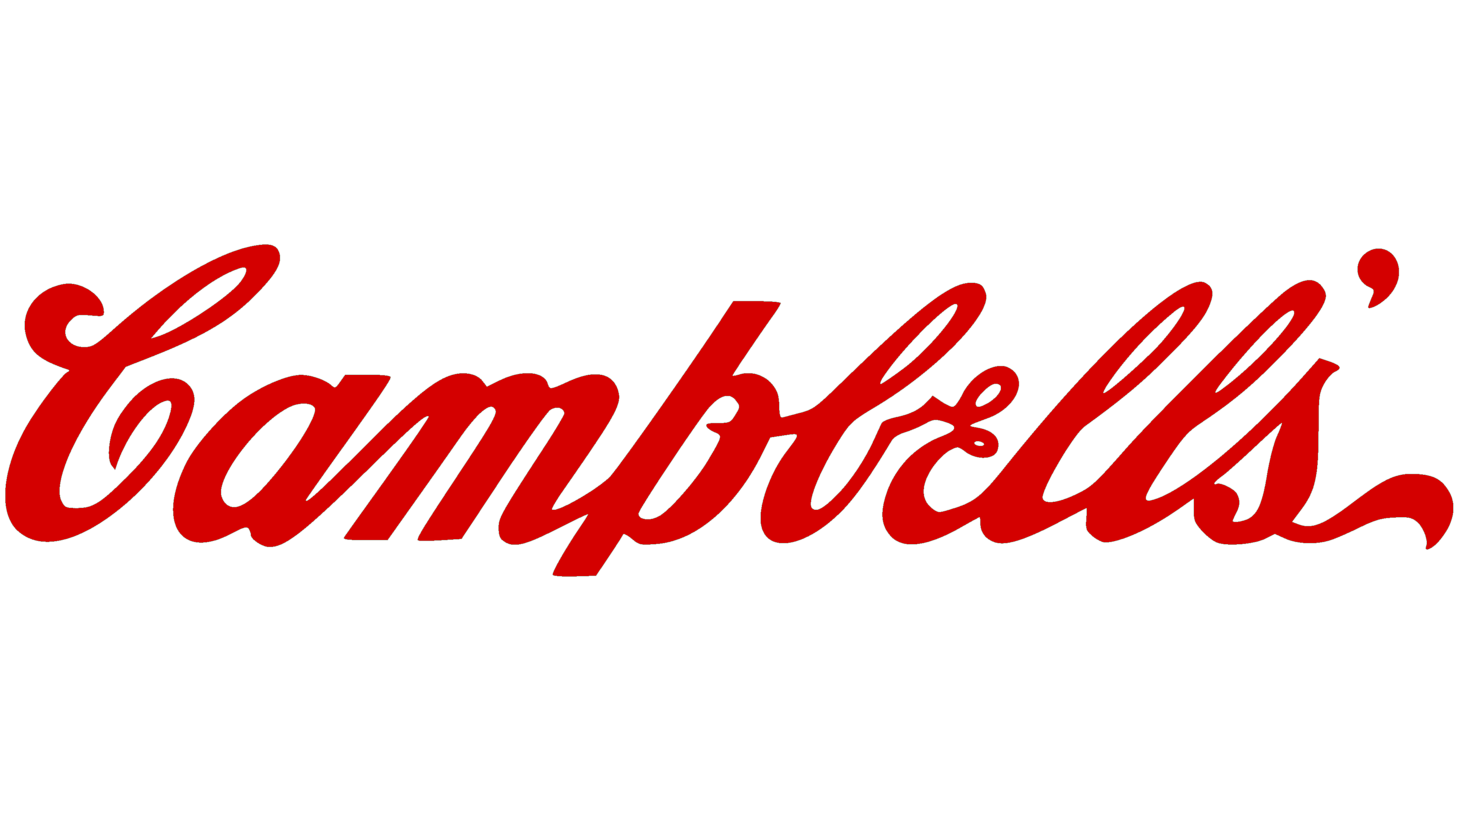 Campbells sign 1898